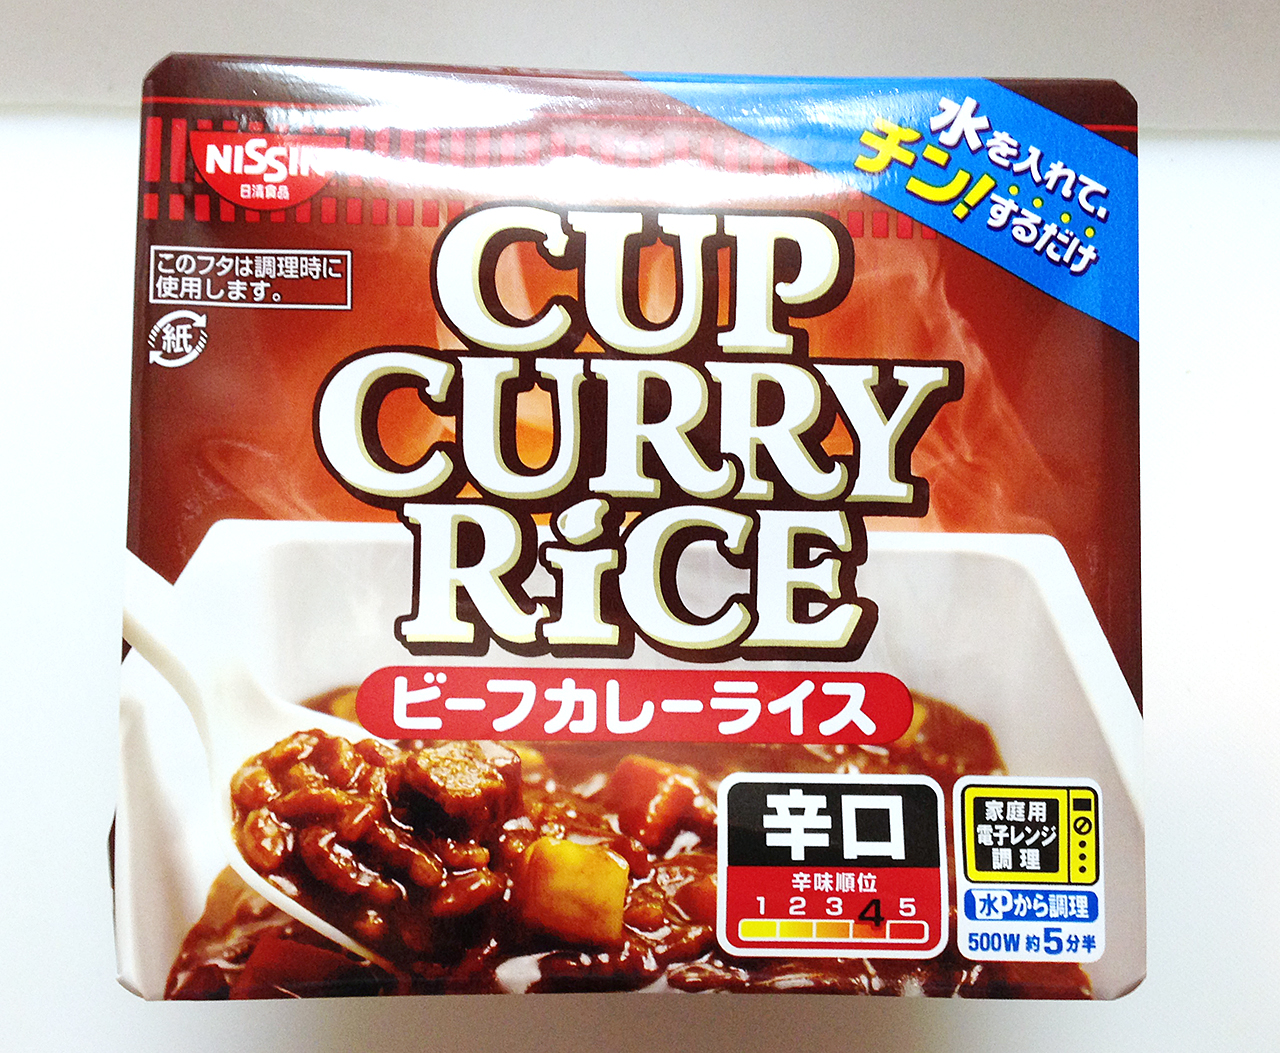 【新製品】レンジでチンするカレー 日清 CUP CURRY RICEを買ってみた。